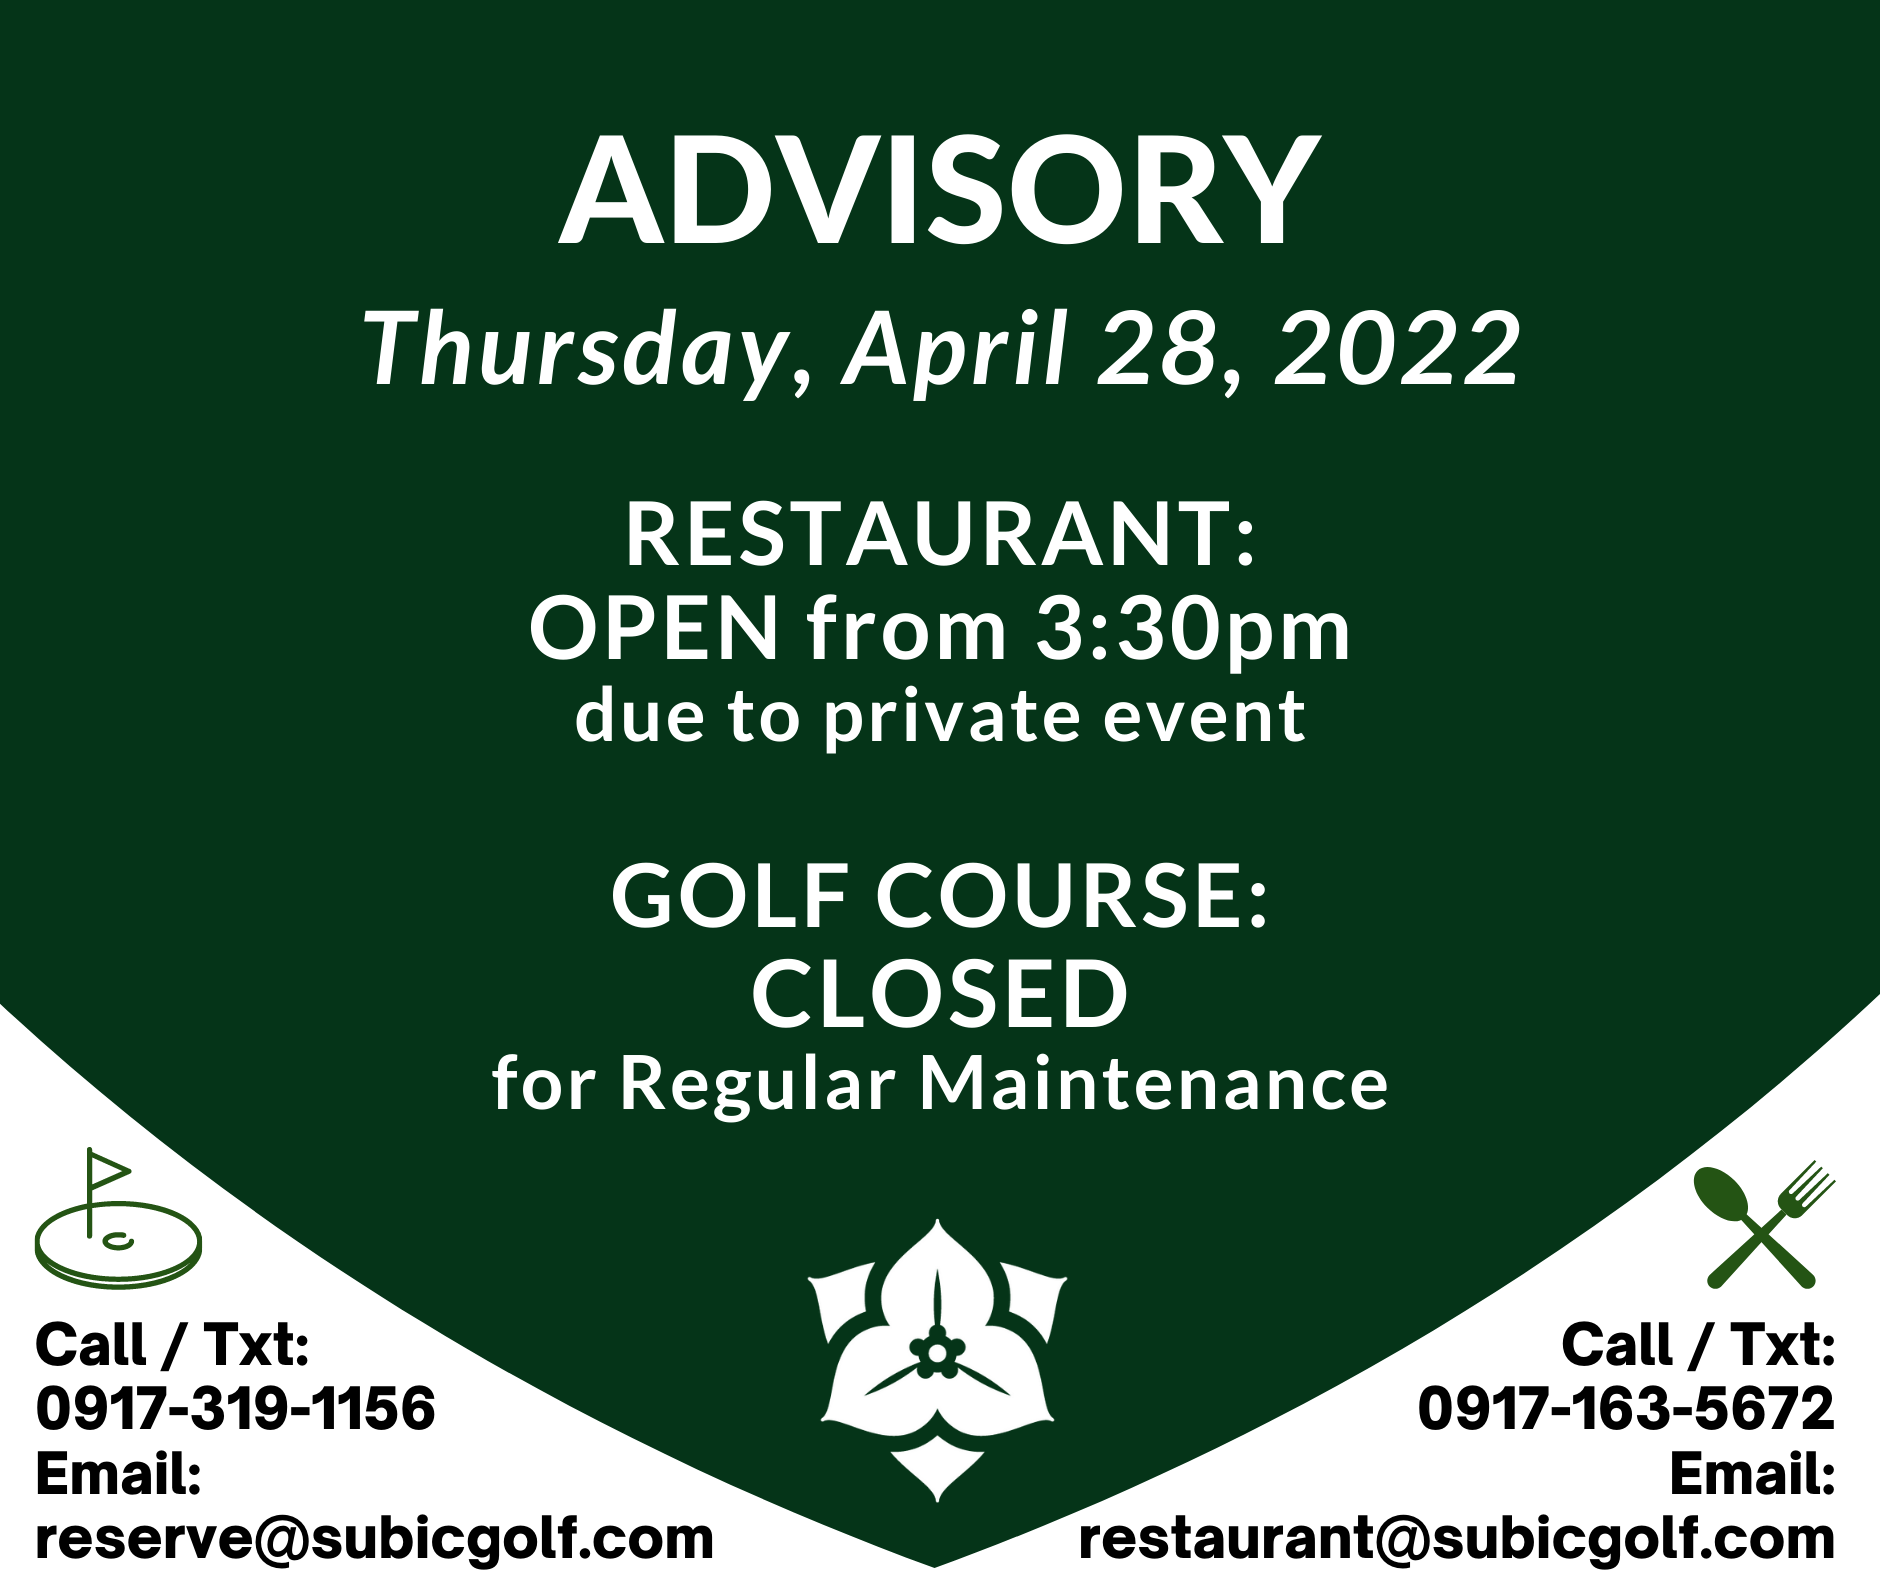 Restaurant Advisory on Thursday, April 28th